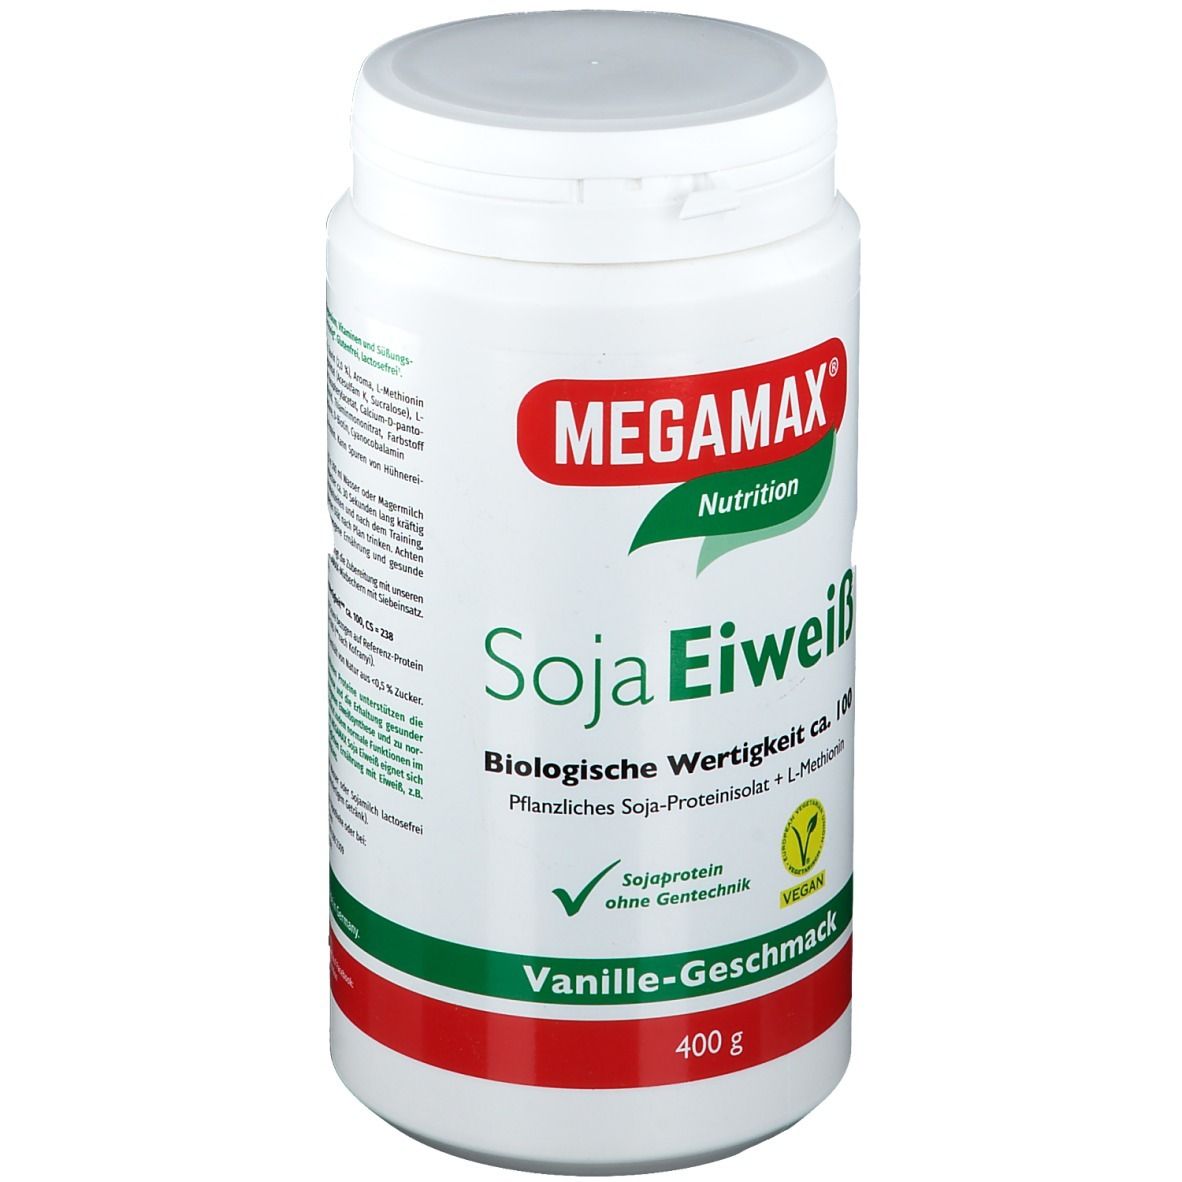 MEGAMAX® Nutrition Soja Eiweiß Vanille-Geschmack